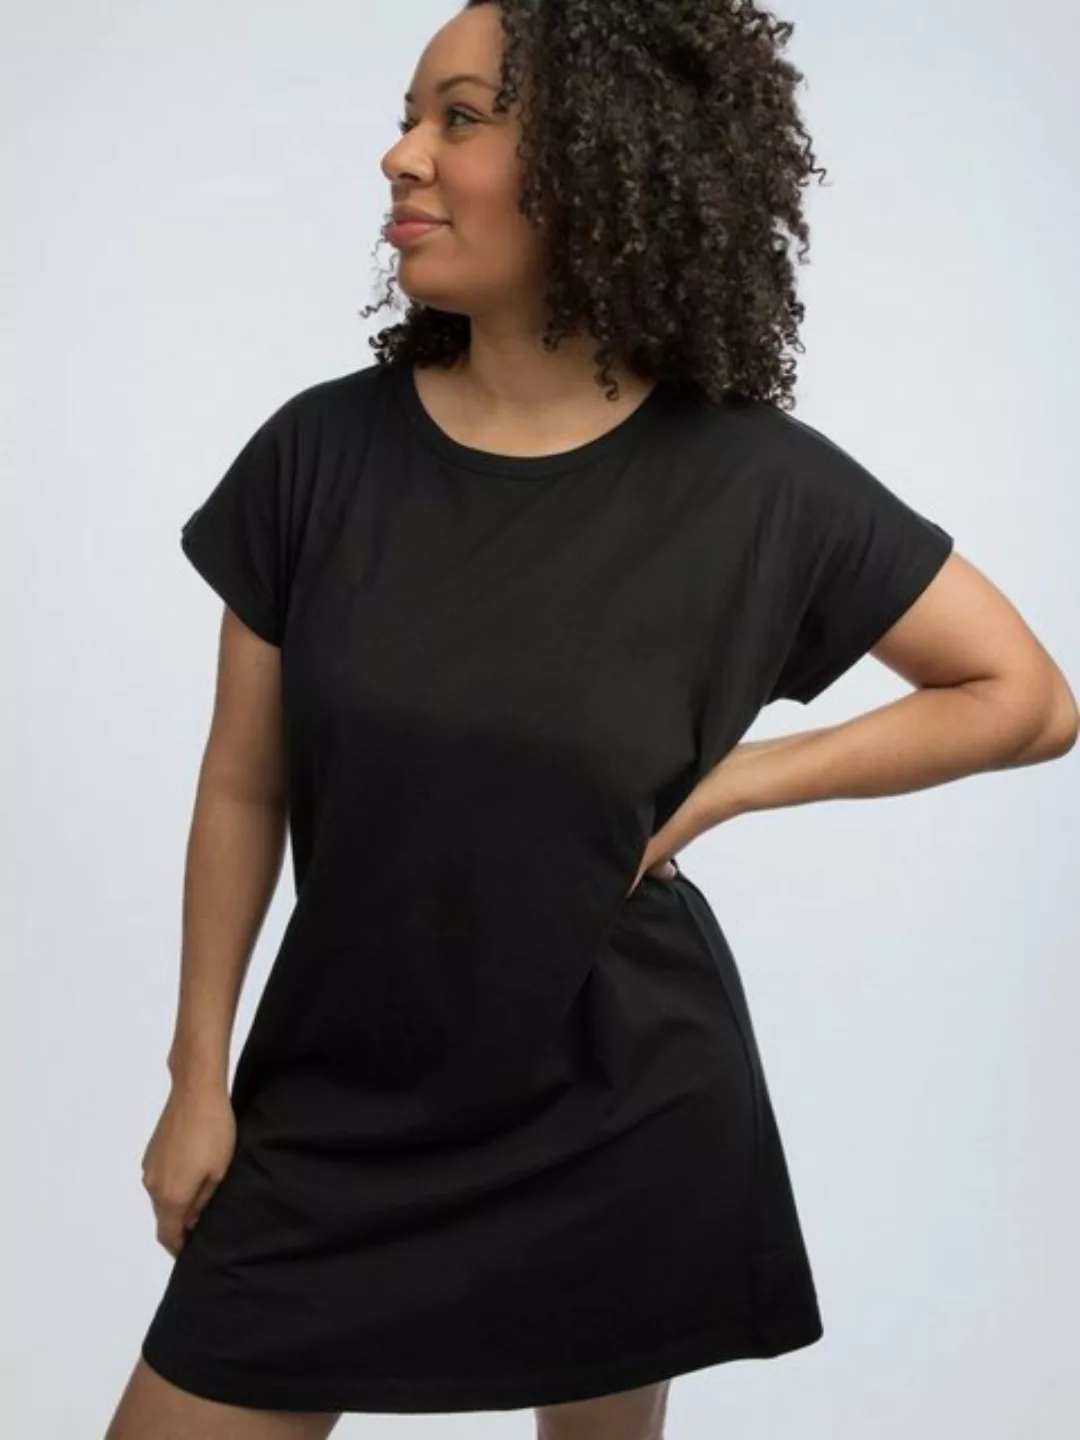 Lockeres T-shirt Kleid günstig online kaufen